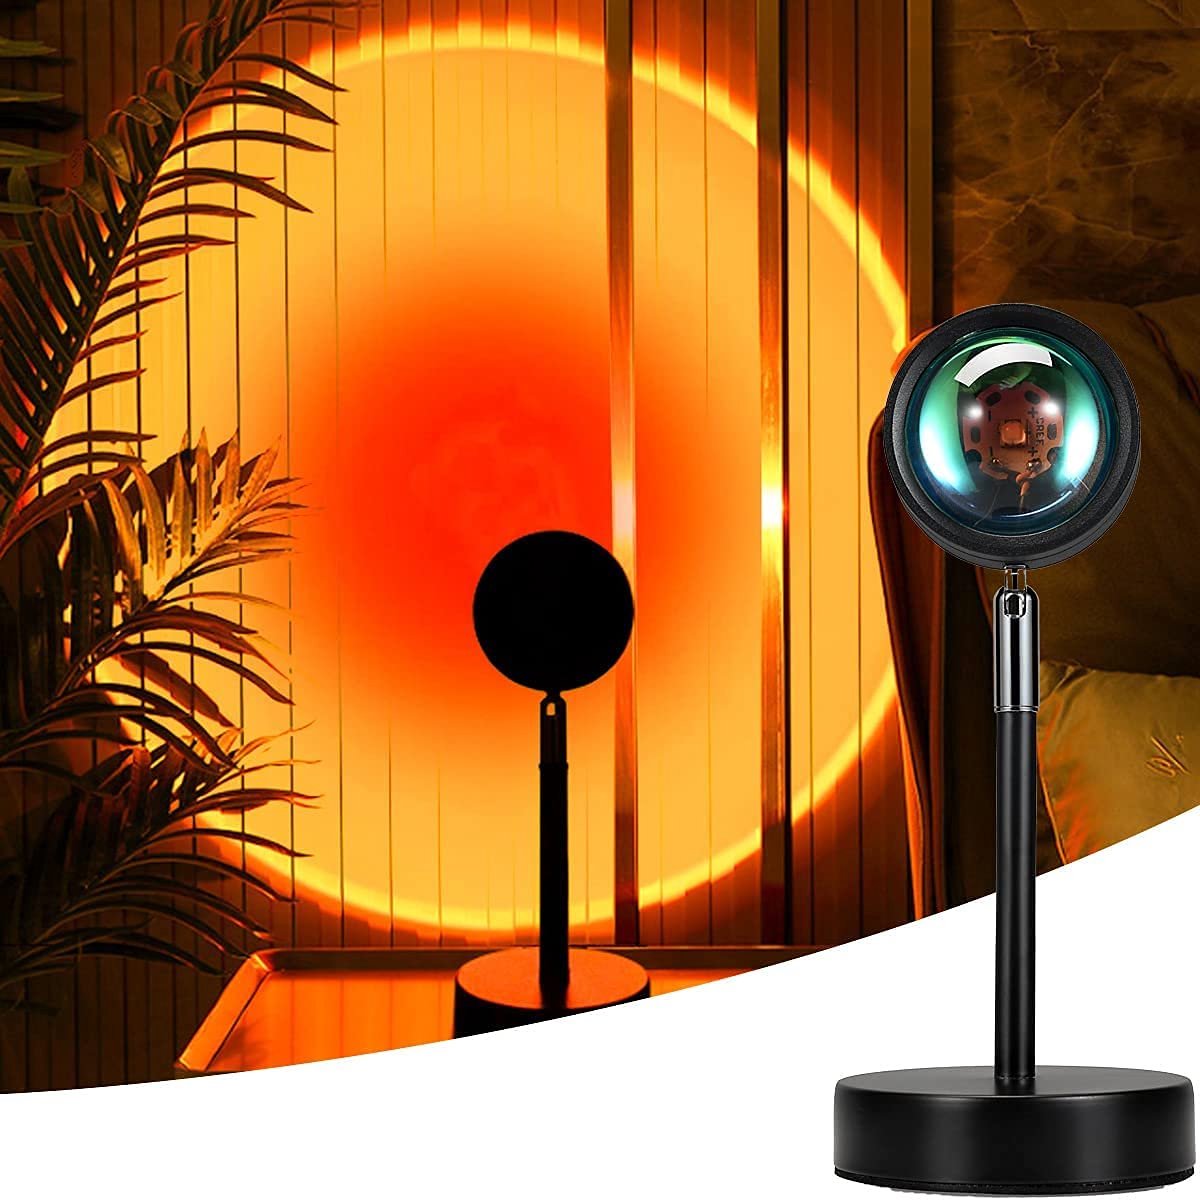 Beroli - Mydethun Sunset Projectielamp - Zonsonderganglamp - USB-ledprojectorlamp - Projectorlicht - 90 graden rotatie - Romantische Visuele Sfeerlamp - Verlichting - Slaapkamer - Decoratie (Zonsondergang Rood)